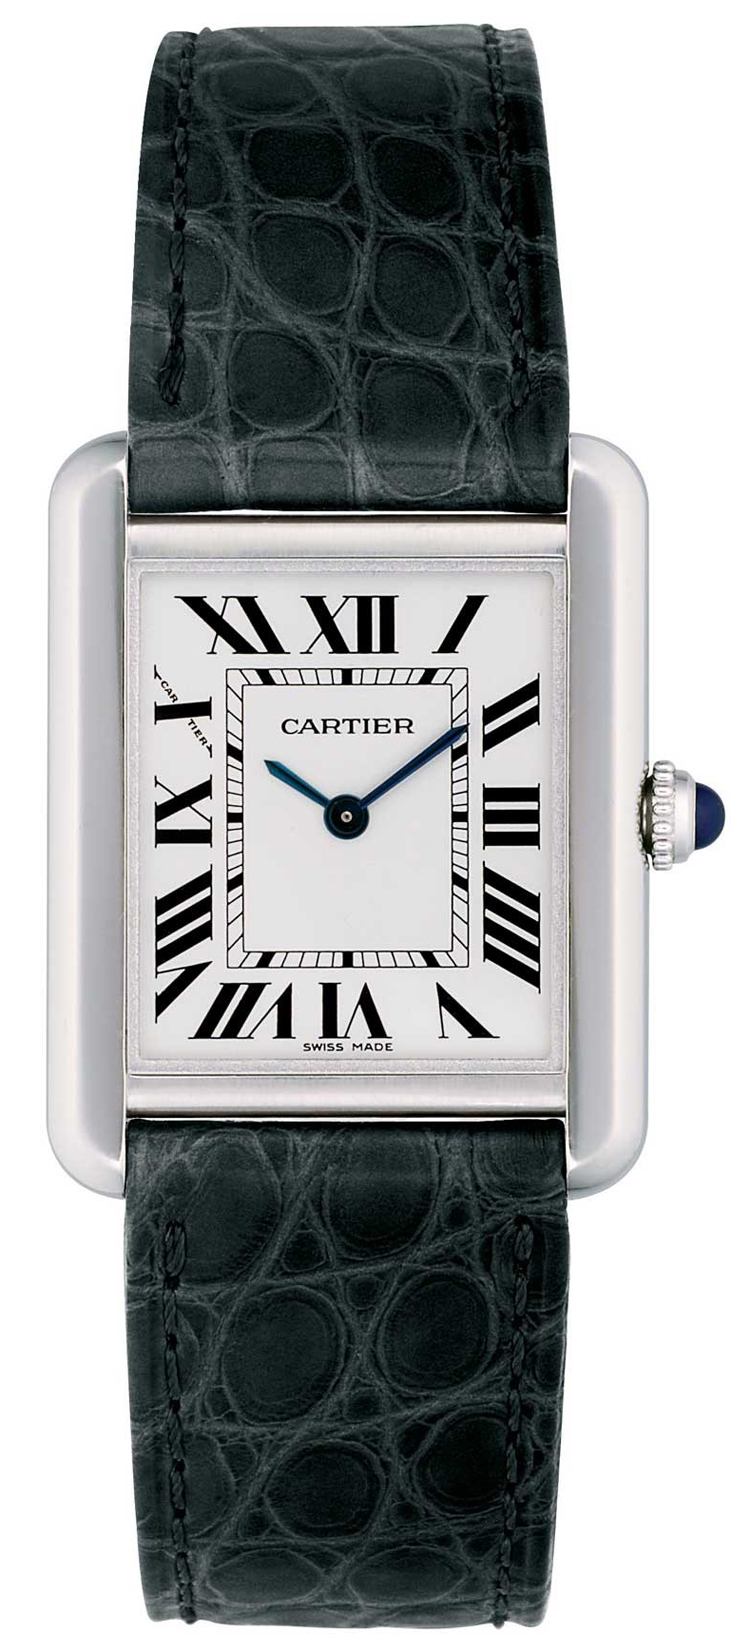  Cartier replica